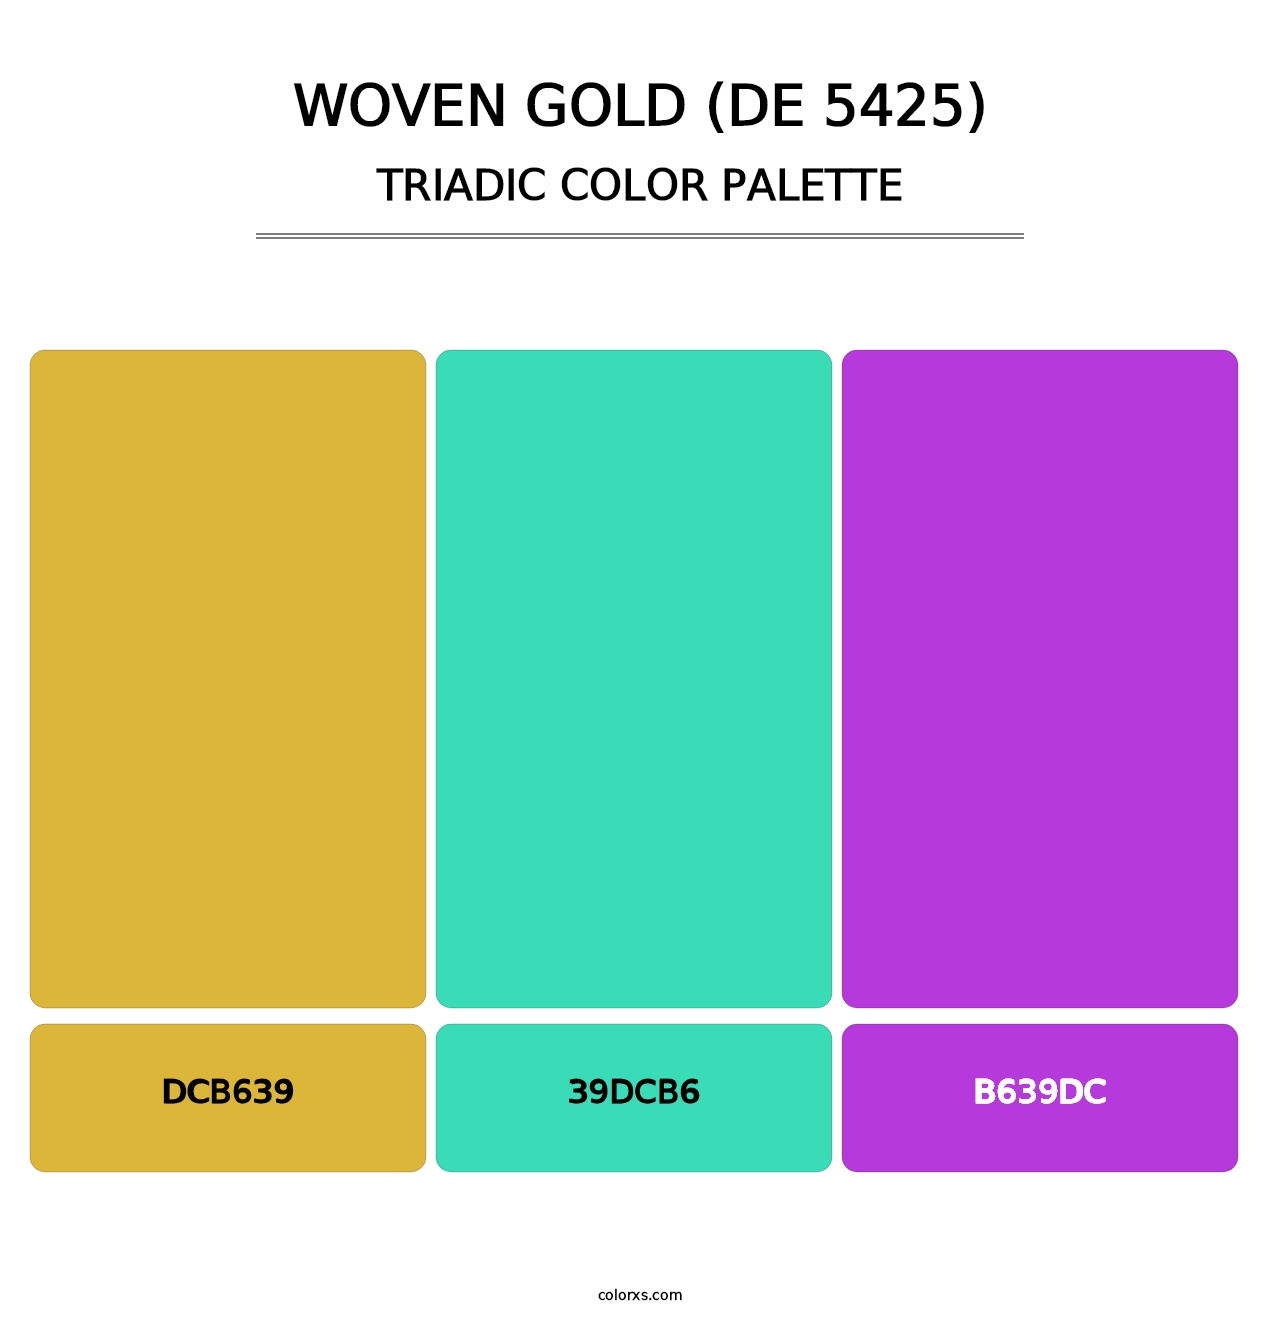 Woven Gold (DE 5425) - Triadic Color Palette